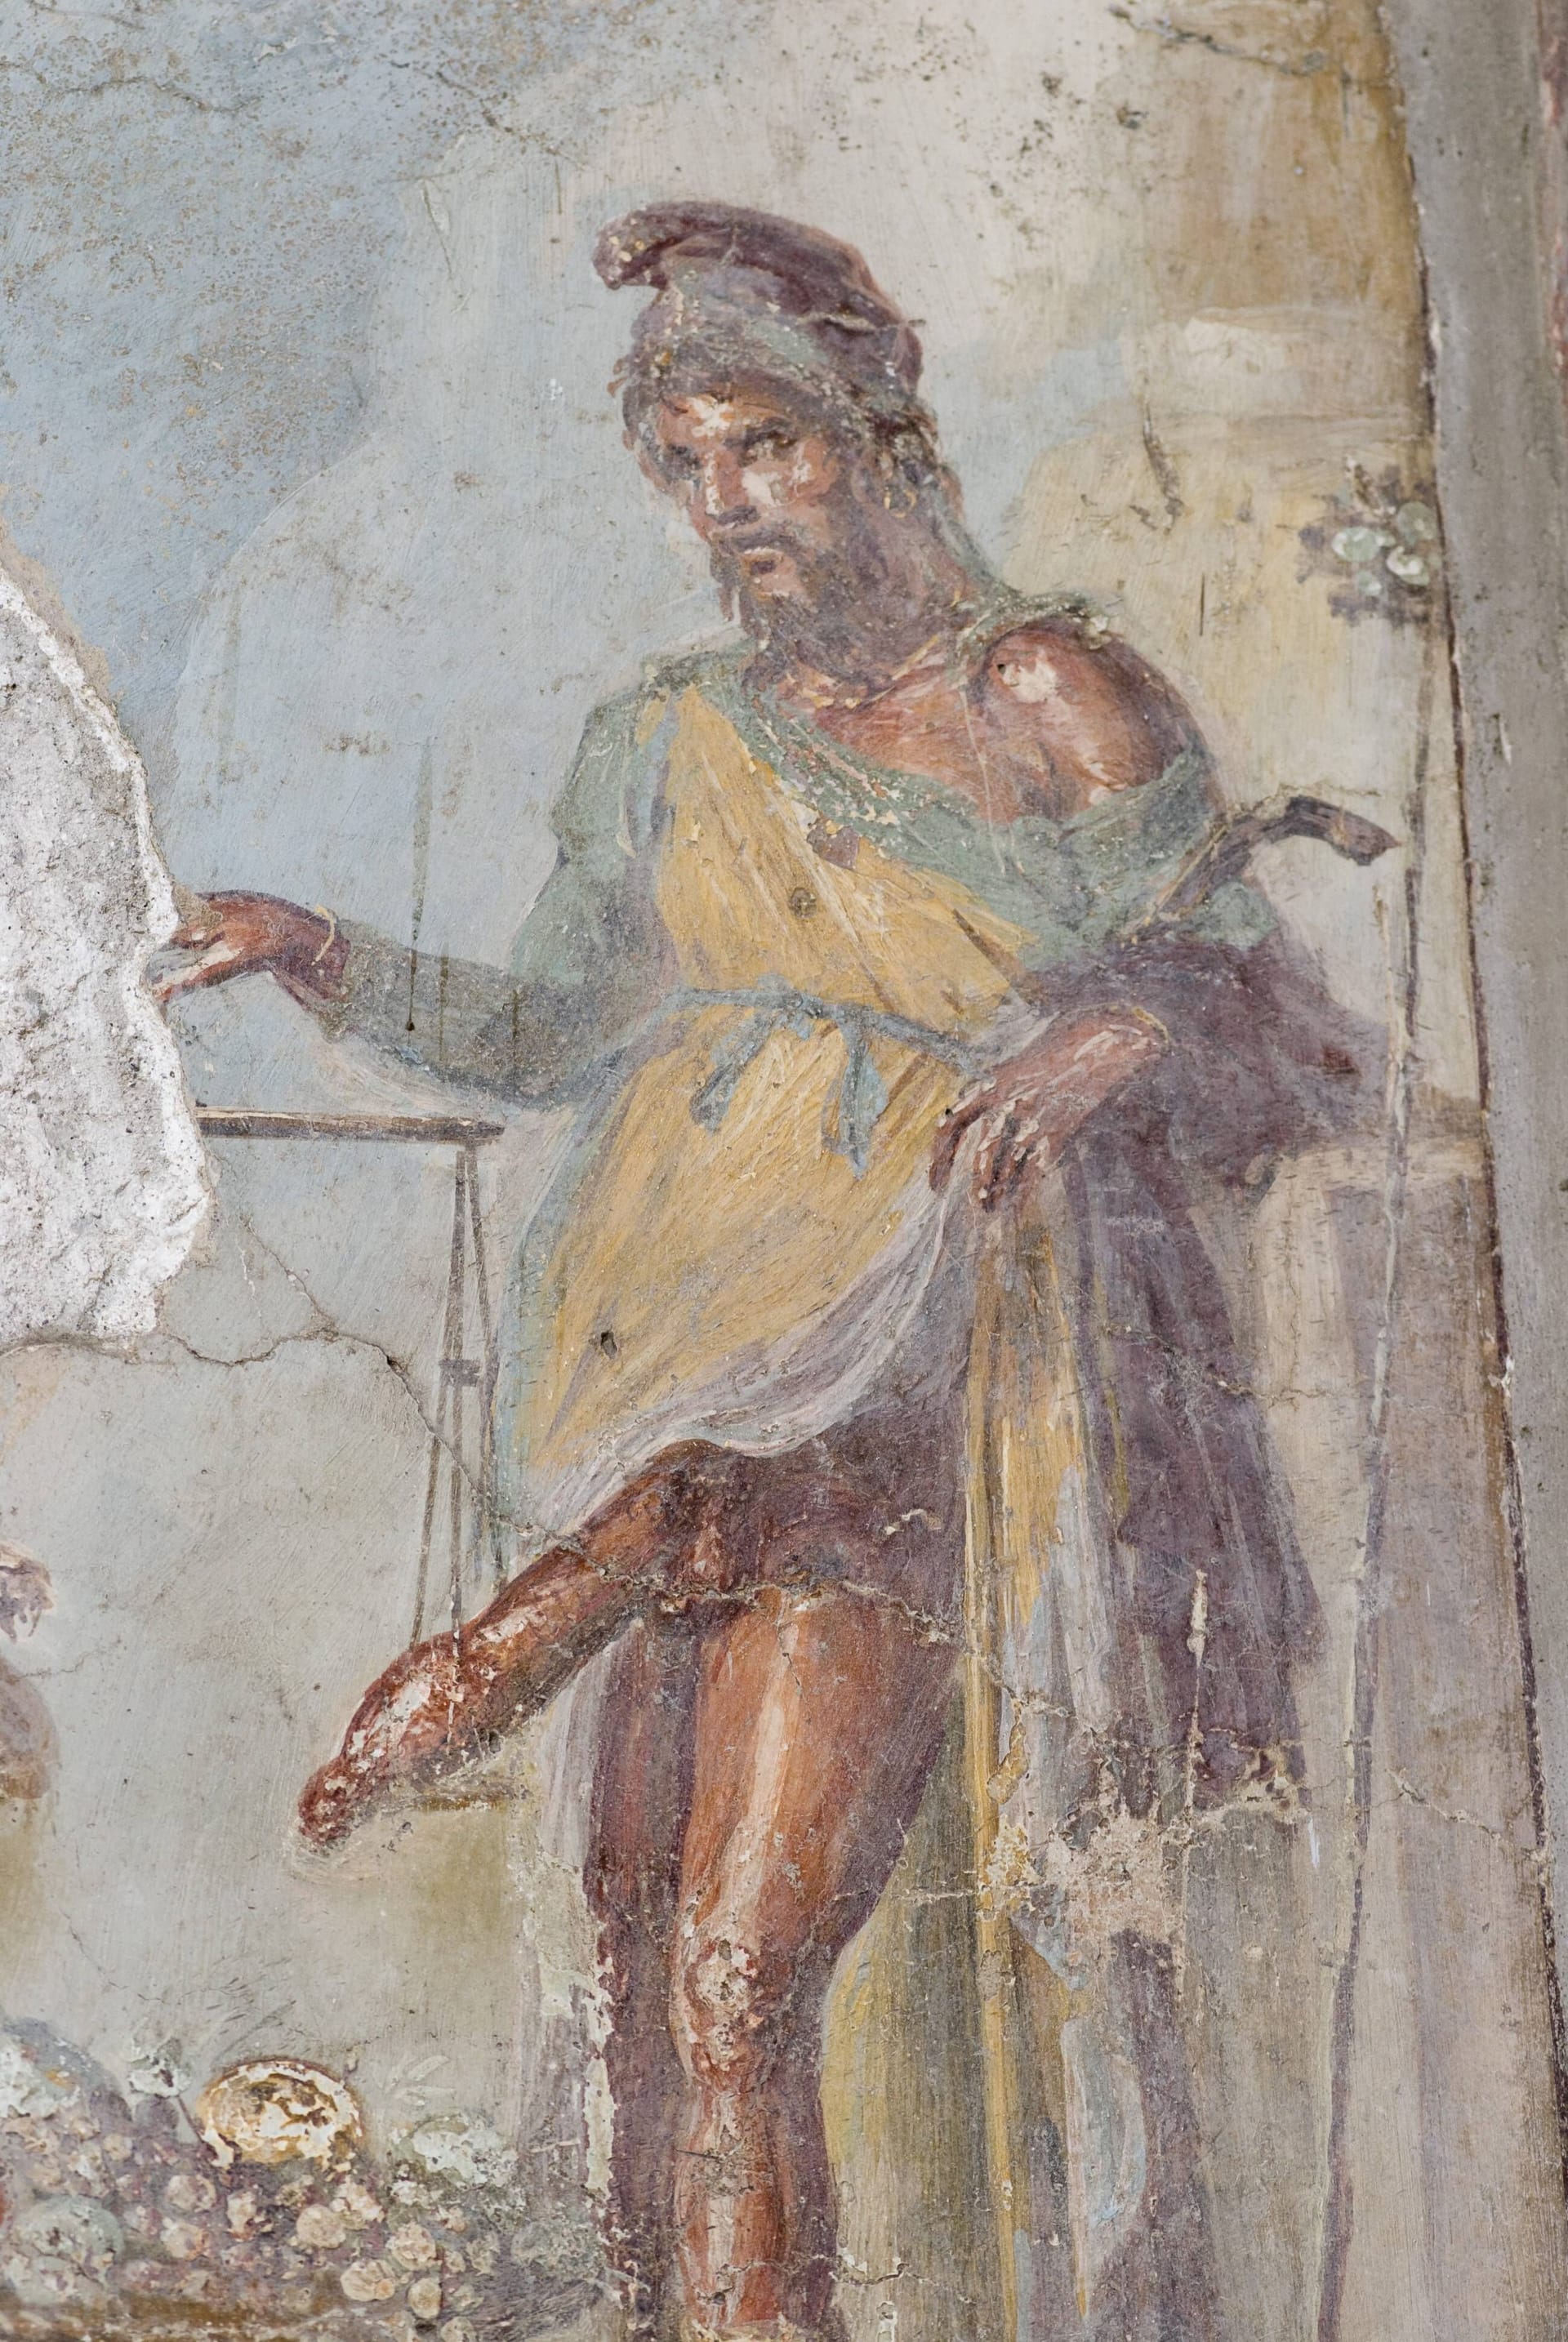 Das berühmte Phallus-Fresko: Auf eine Waagschale hat Priapus seinen übergroßen Phallus gelegt.